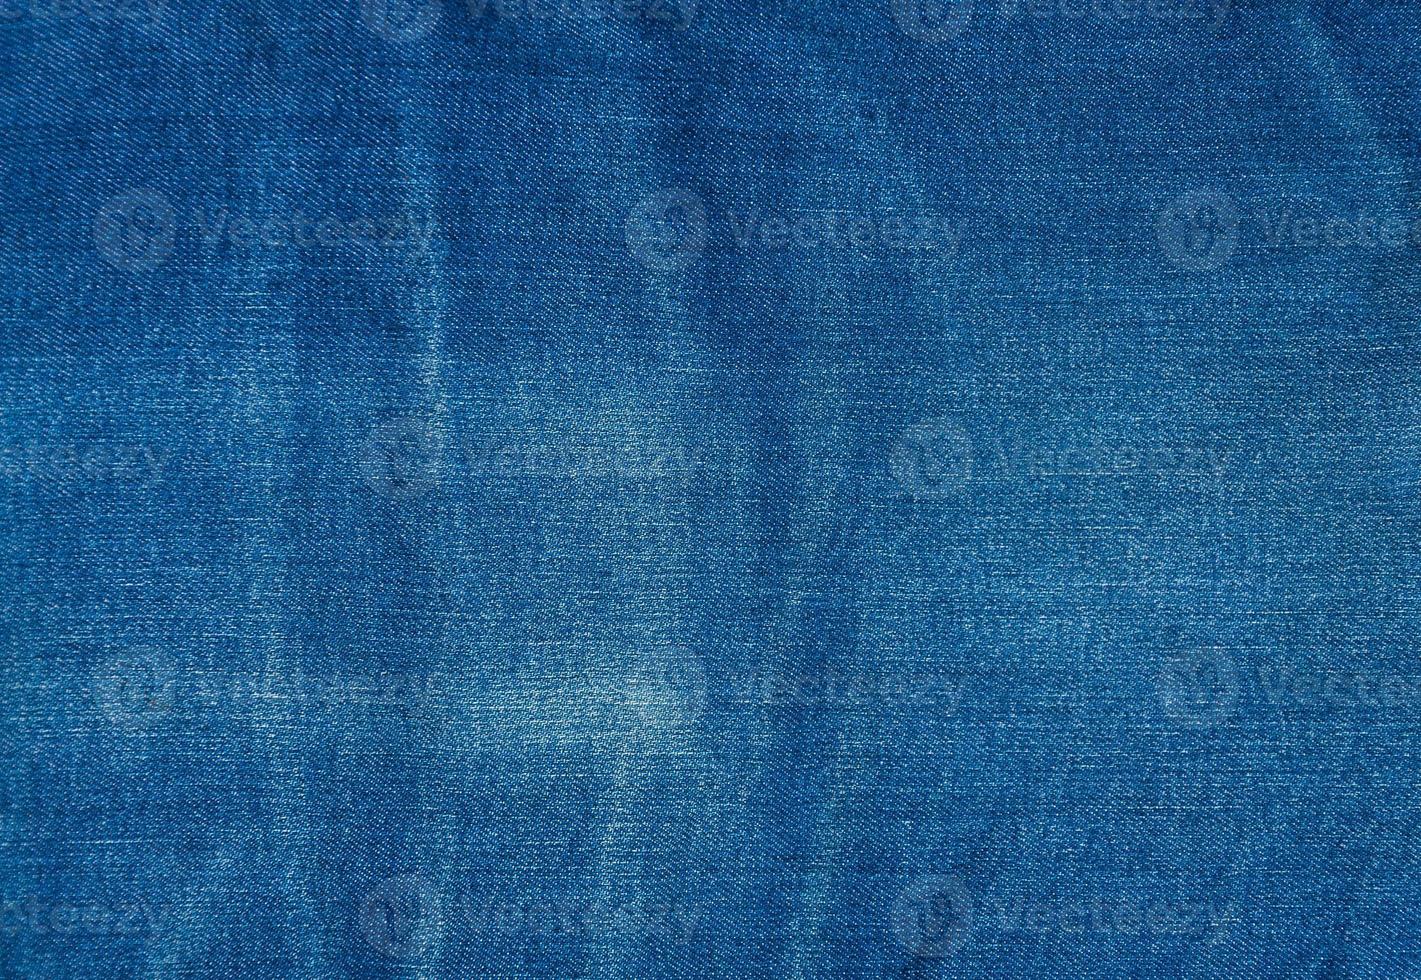 fondo de mezclilla azul, textura de jeans de mezclilla azul, fondo de jeans foto